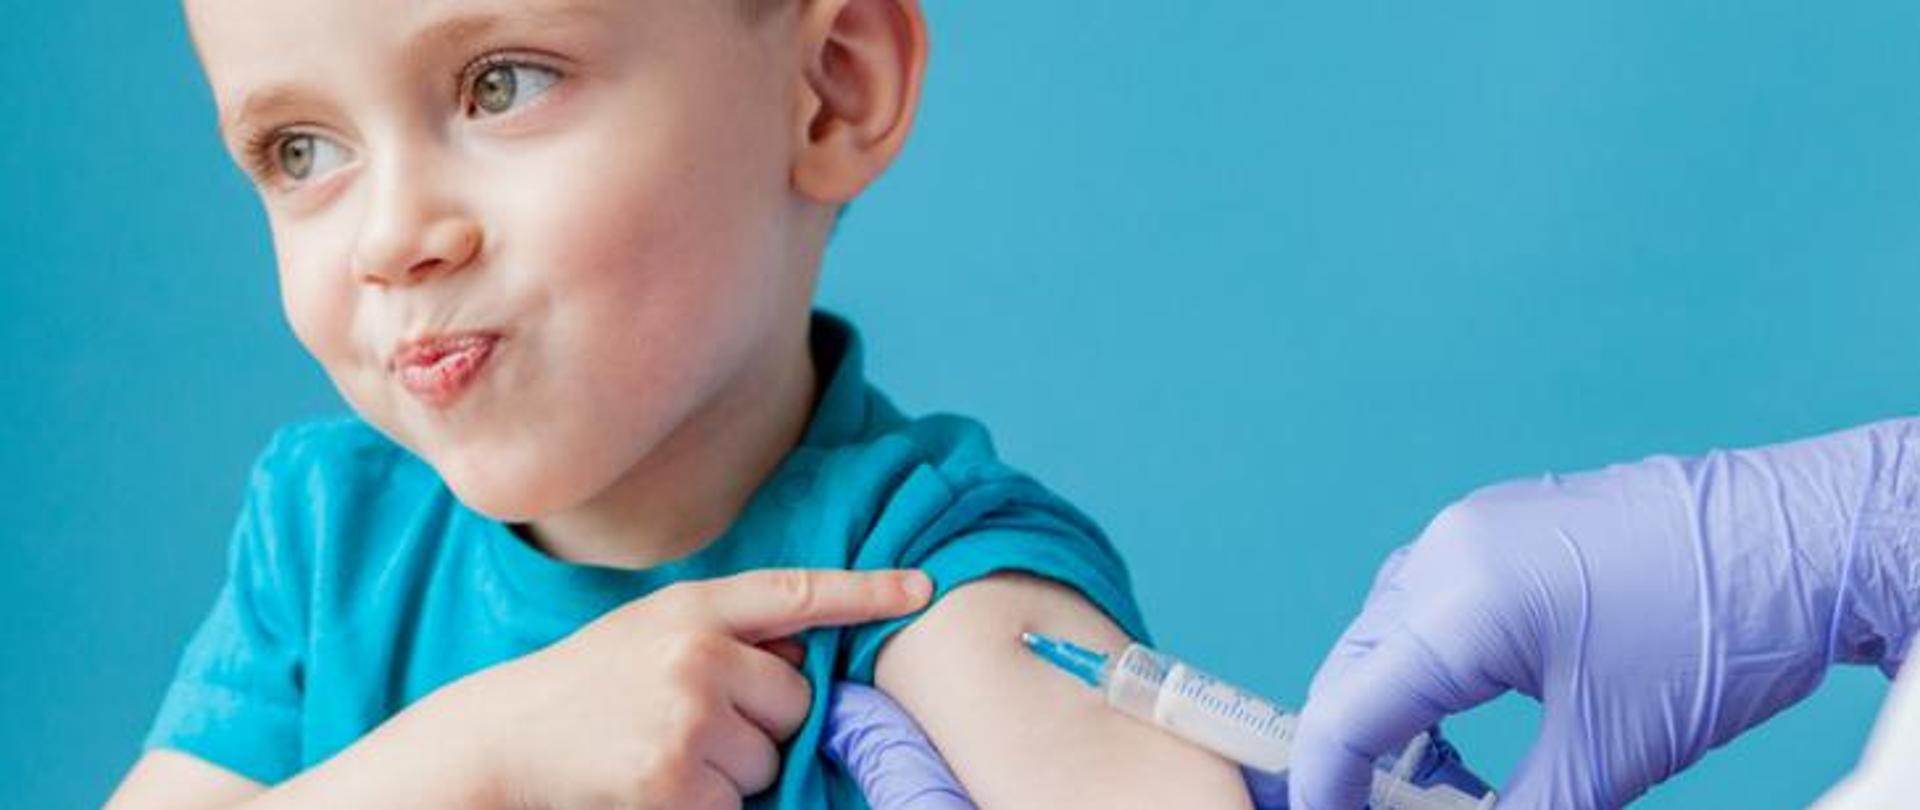 Na zdjęciu dziecko przyjmujące szczepionkę w ramię.